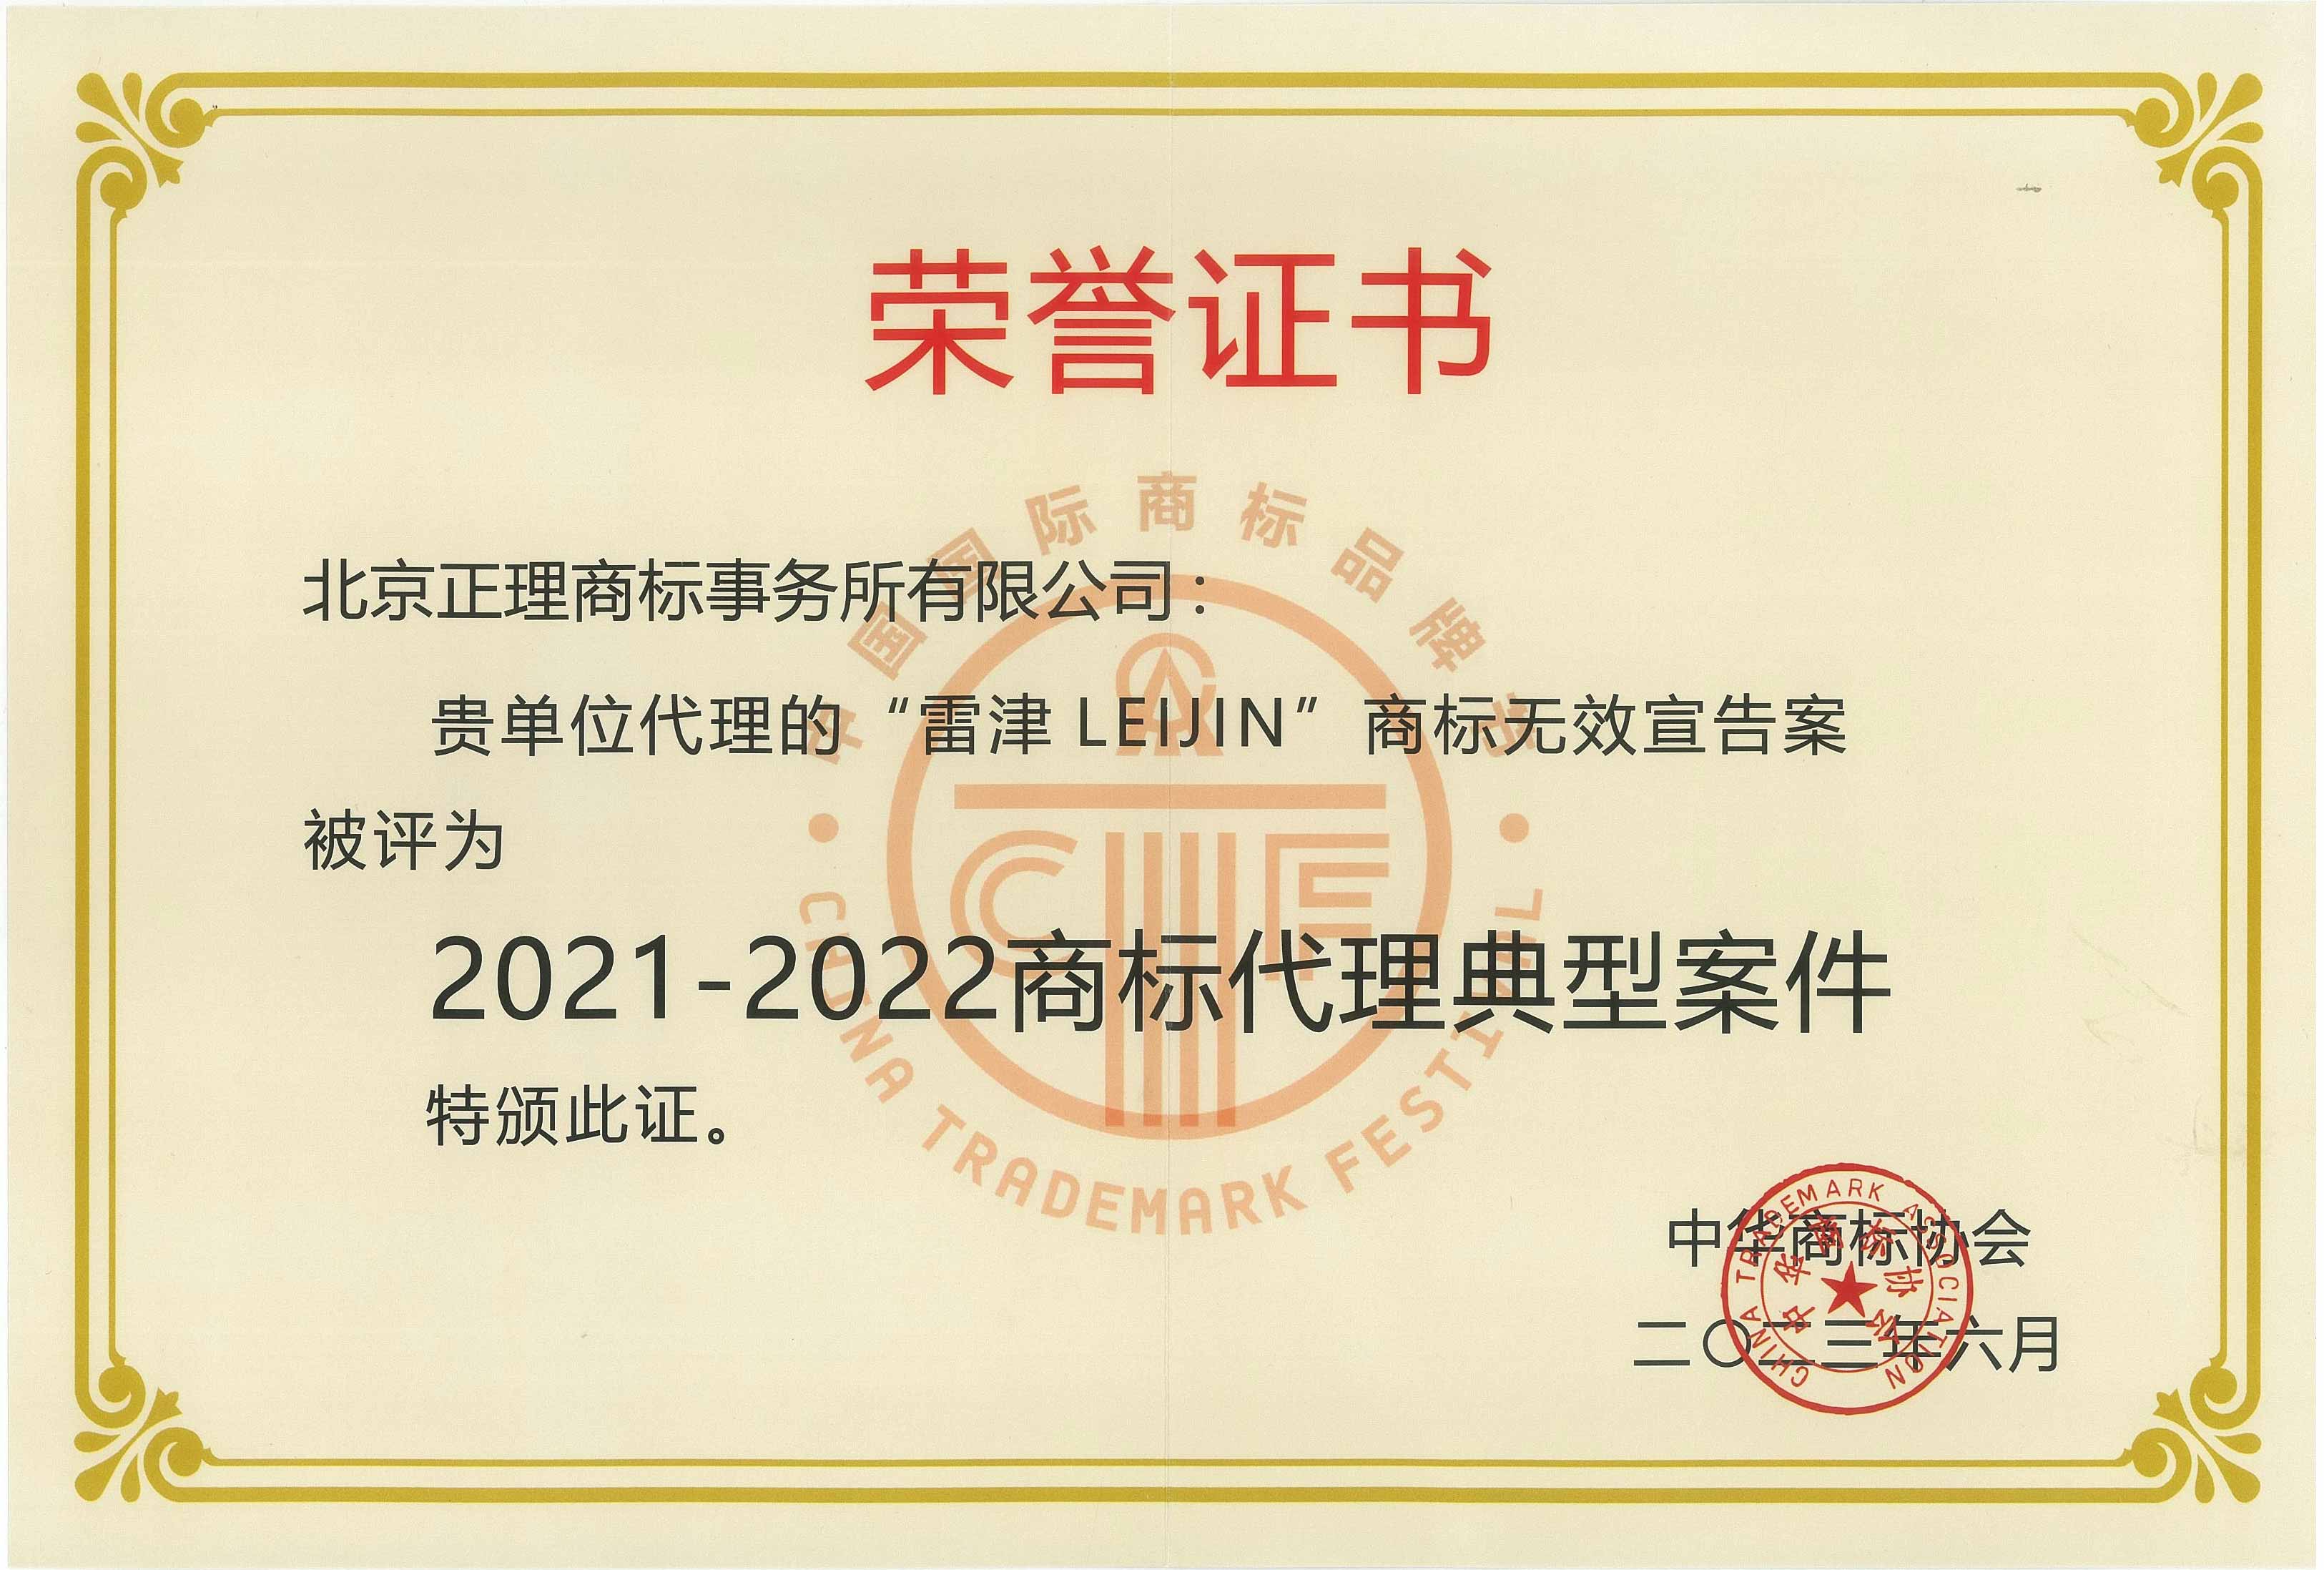 2021-2022年度 雷津LEIJIN 典型代理案件